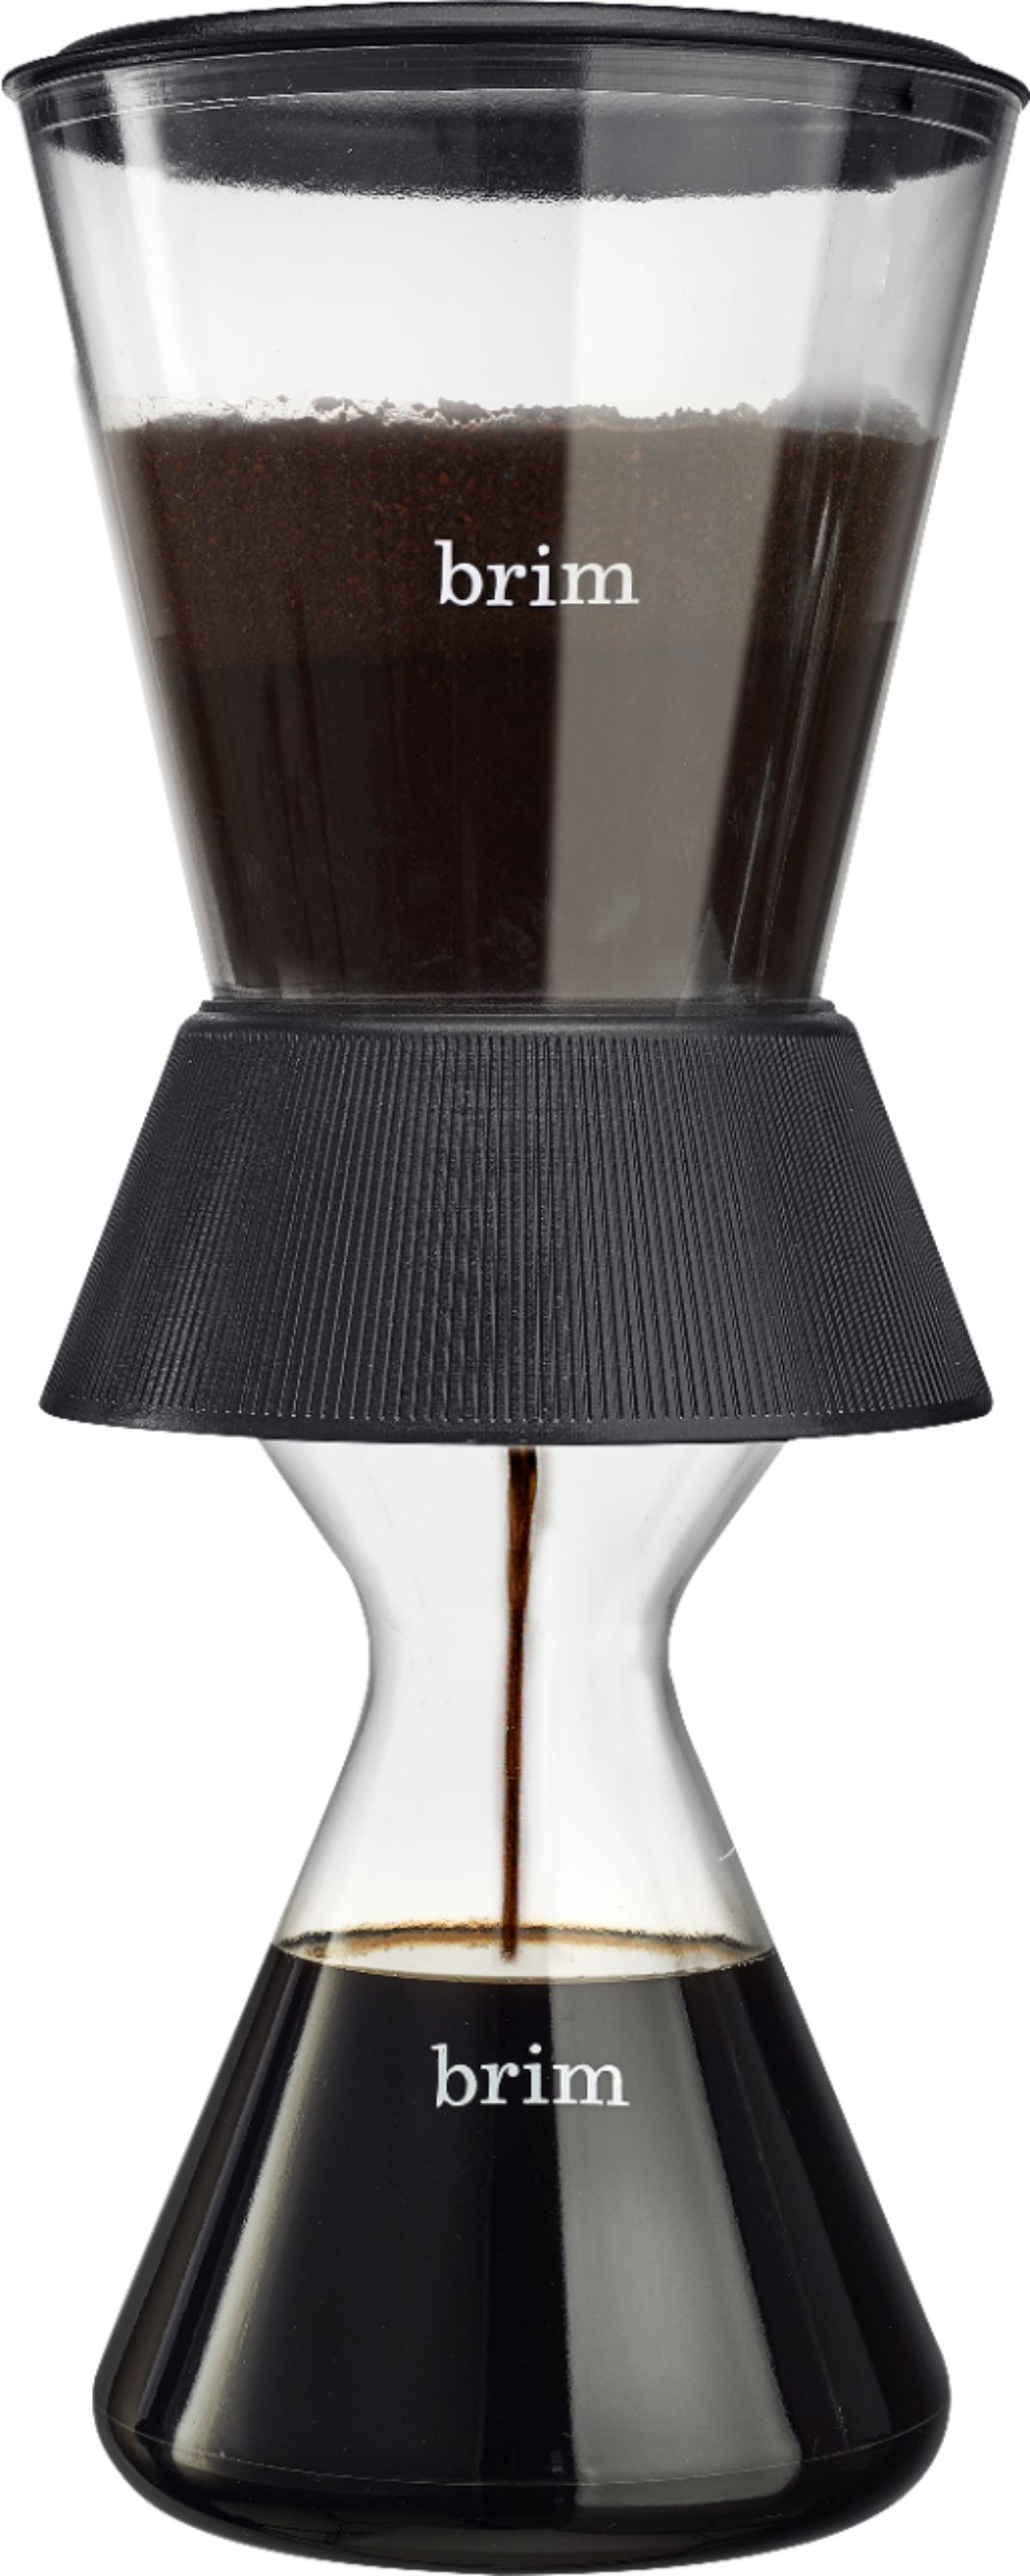 Brim - 5-Cup Cold Brew Coffee Maker - Black